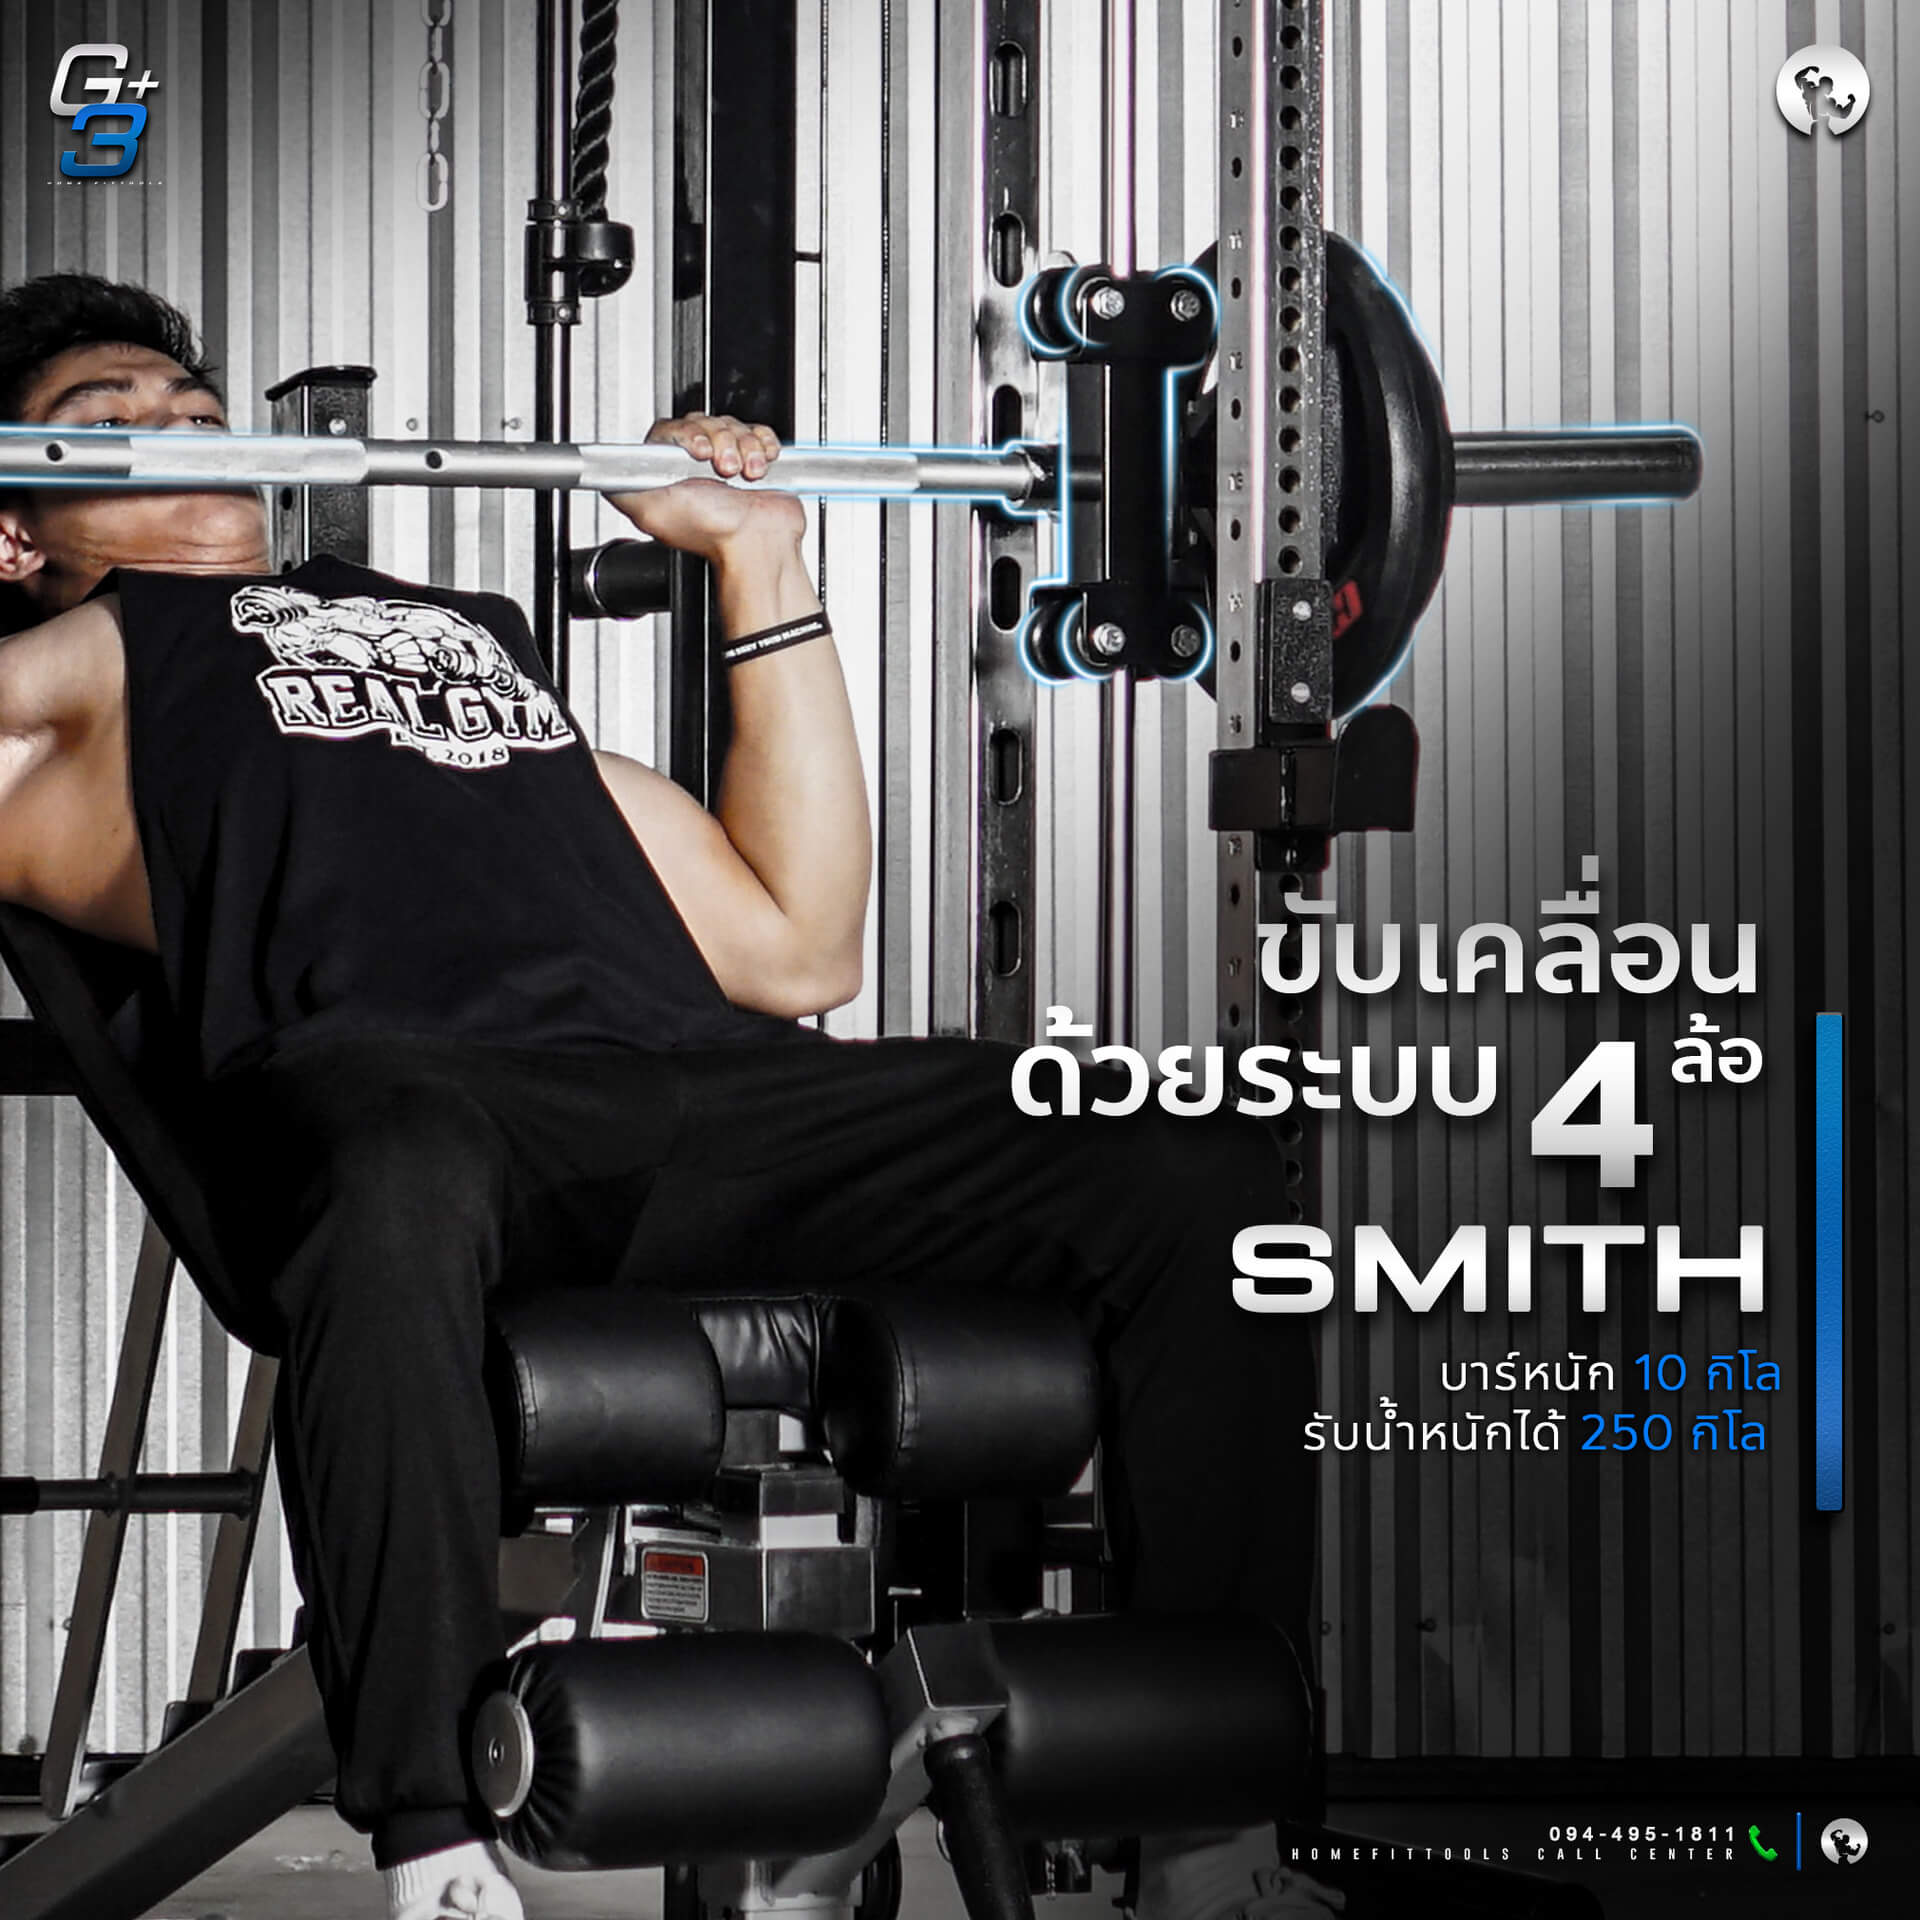 วิธีเล่น Smith machine G3+ สมิทแมชชีน G3+ ออกกำลังกาย เครื่องออกกำลังกาย อุปกรณ์ฟิตเนส ชุดโฮมยิม